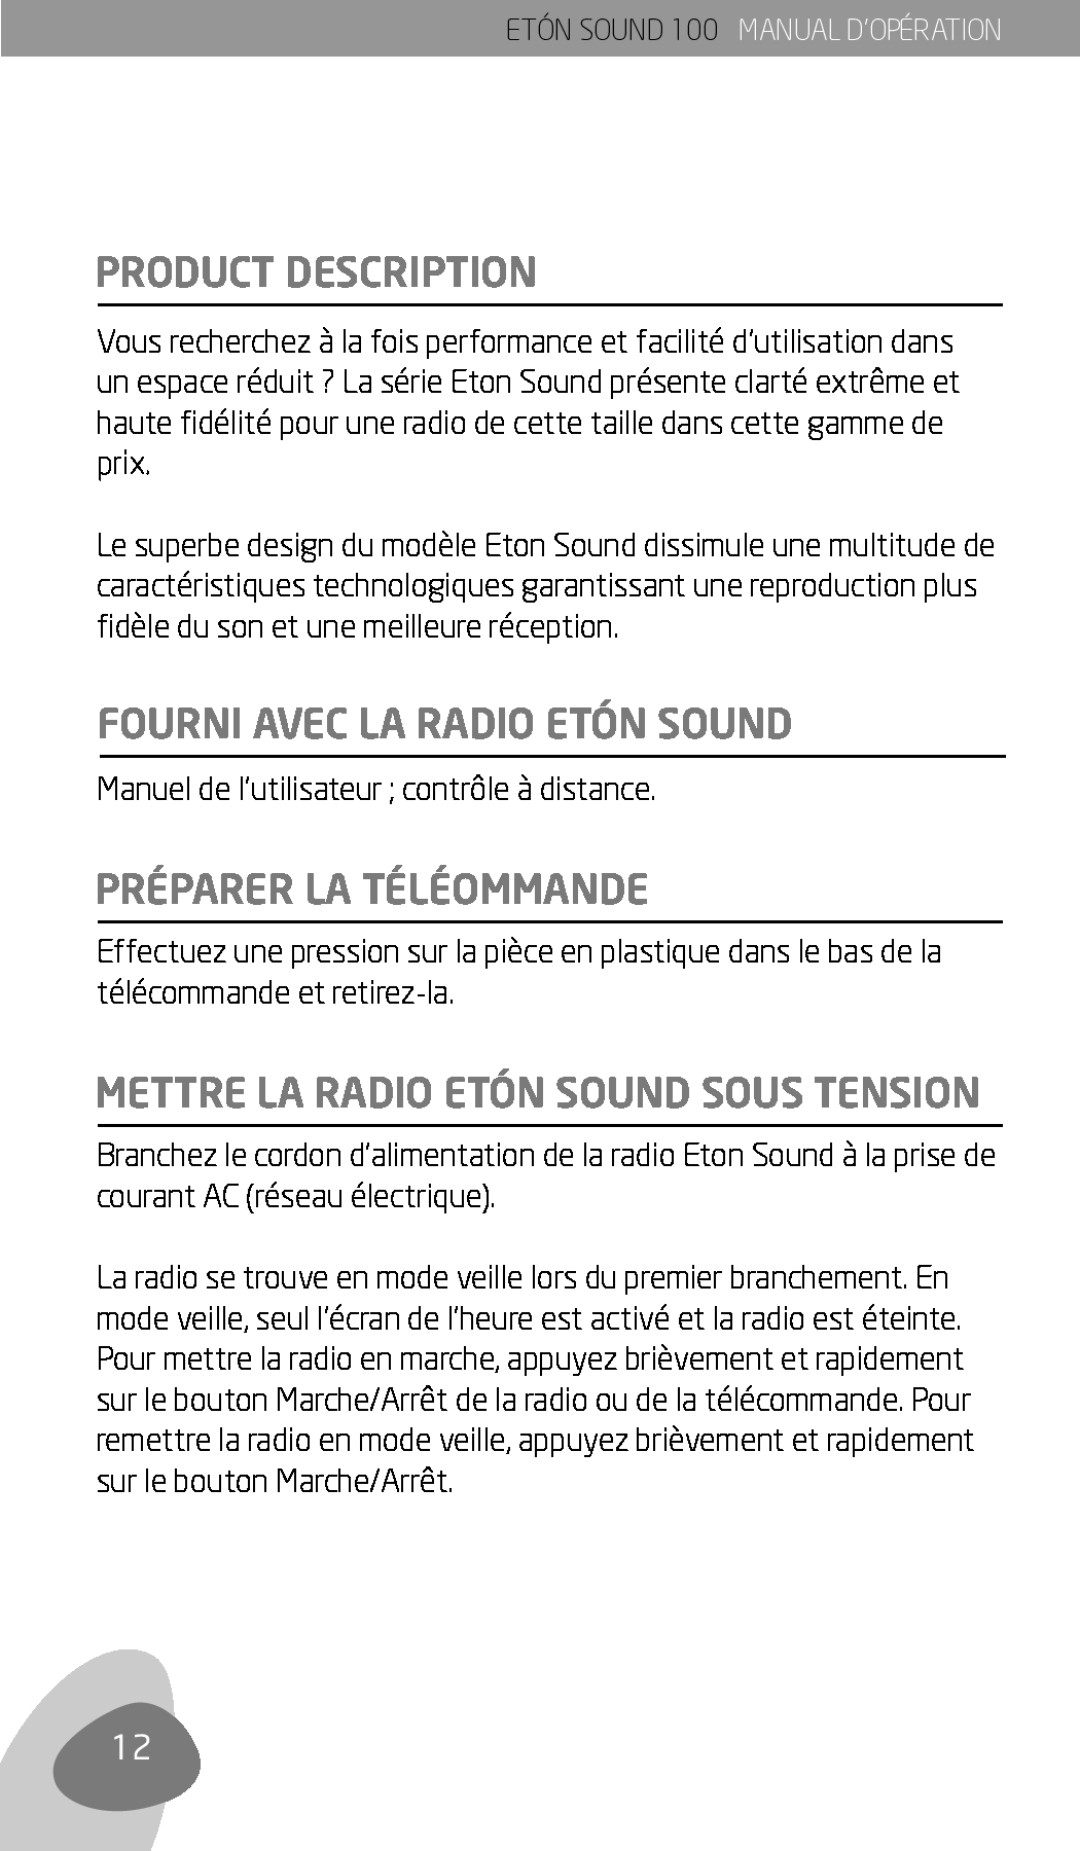 Eton Sound 100 owner manual Product Description, Fourni Avec La Radio Etón Sound, Préparer La Téléommande 